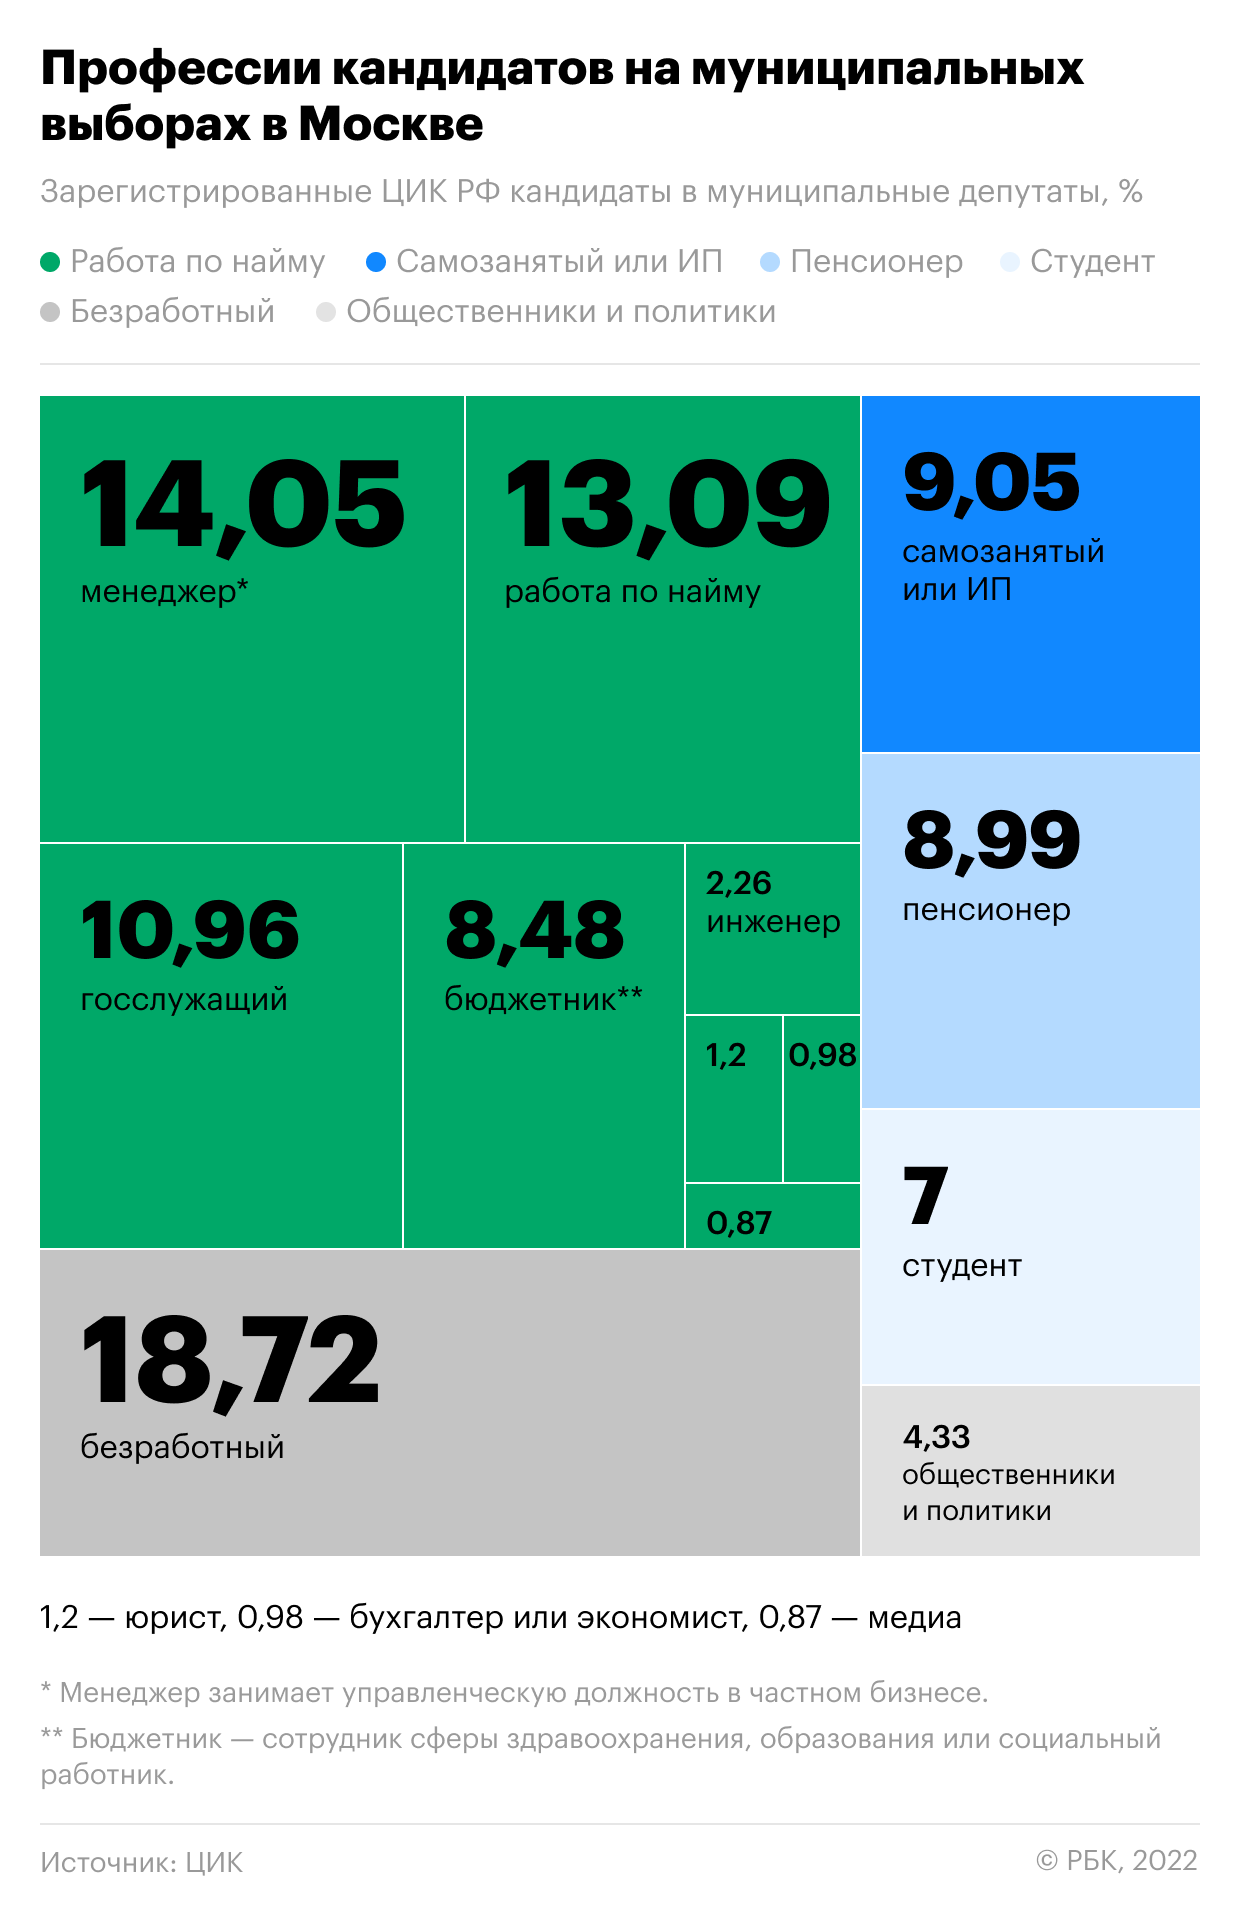 Каждый пятый кандидат в московские депутаты оказался безработным